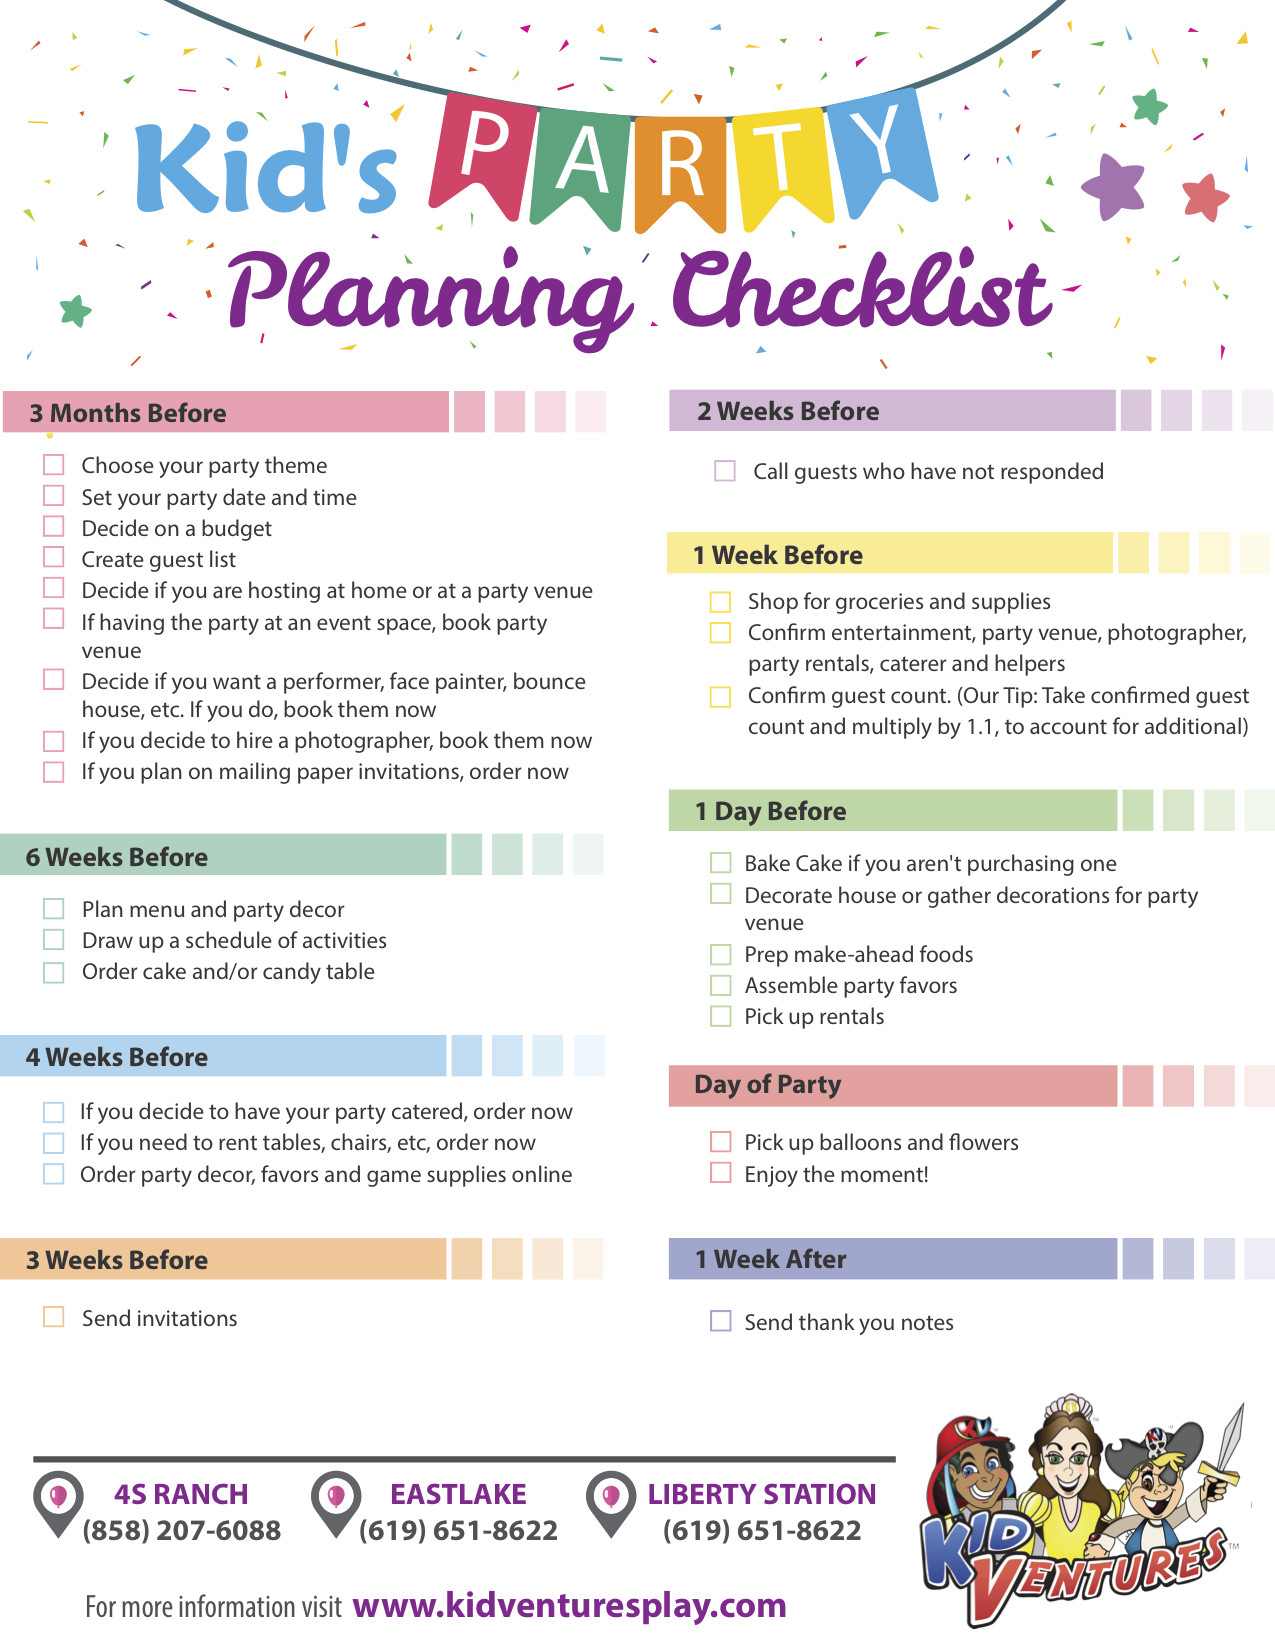 Kids Party Checklist
 Kids Party Planning Checklist